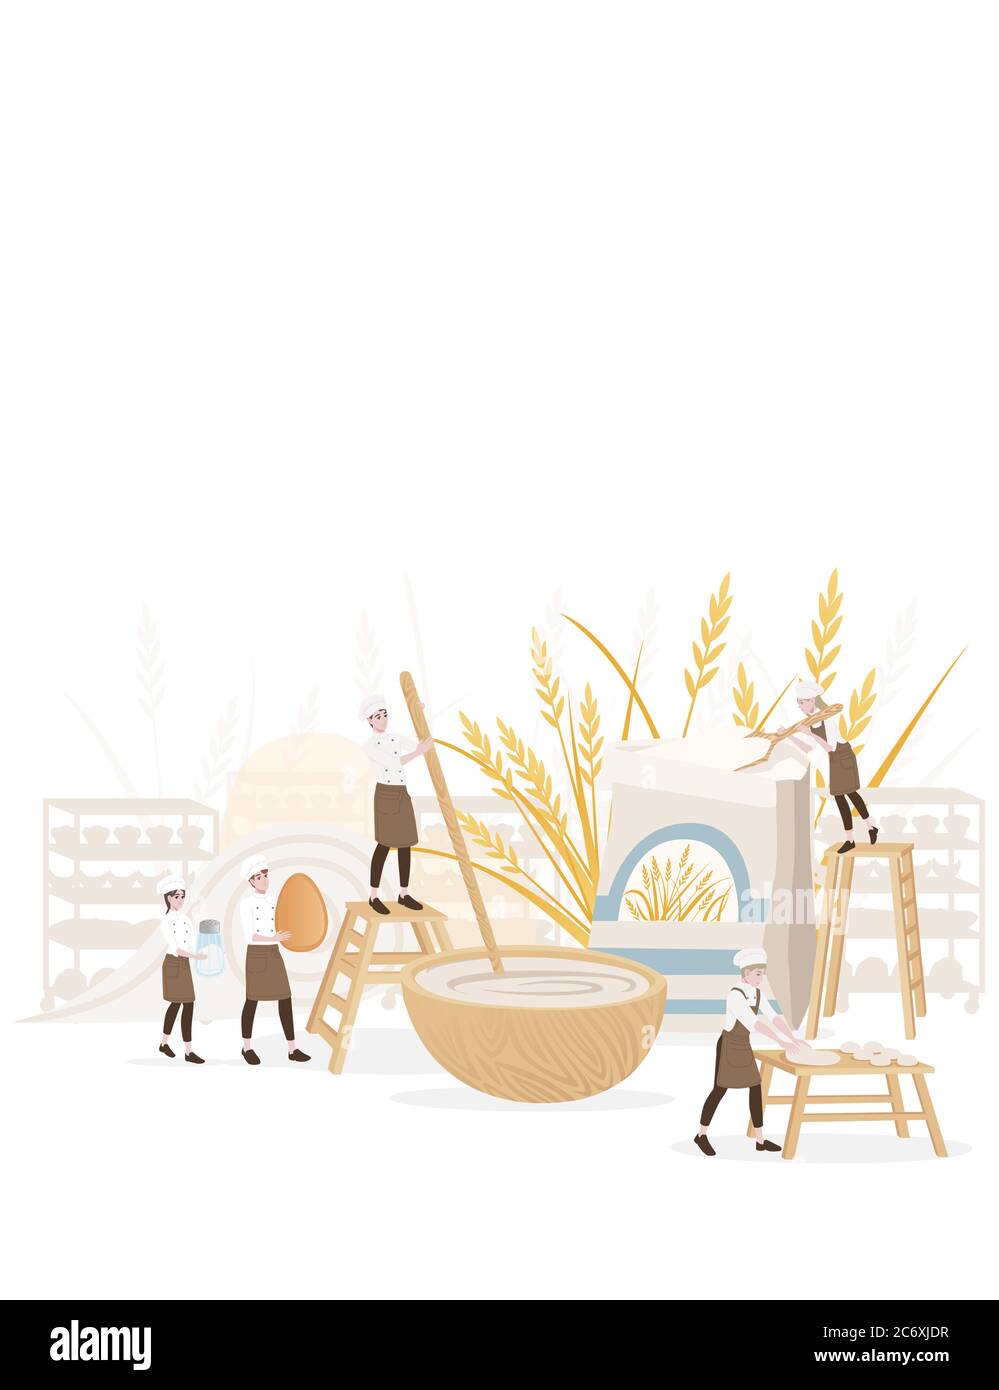 Fabricant de boulangerie chef cuisinier homme et femme cuisine professionnel boulangerie dessin animé personnage dessin vectoriel plat illustration sur fond blanc Illustration de Vecteur